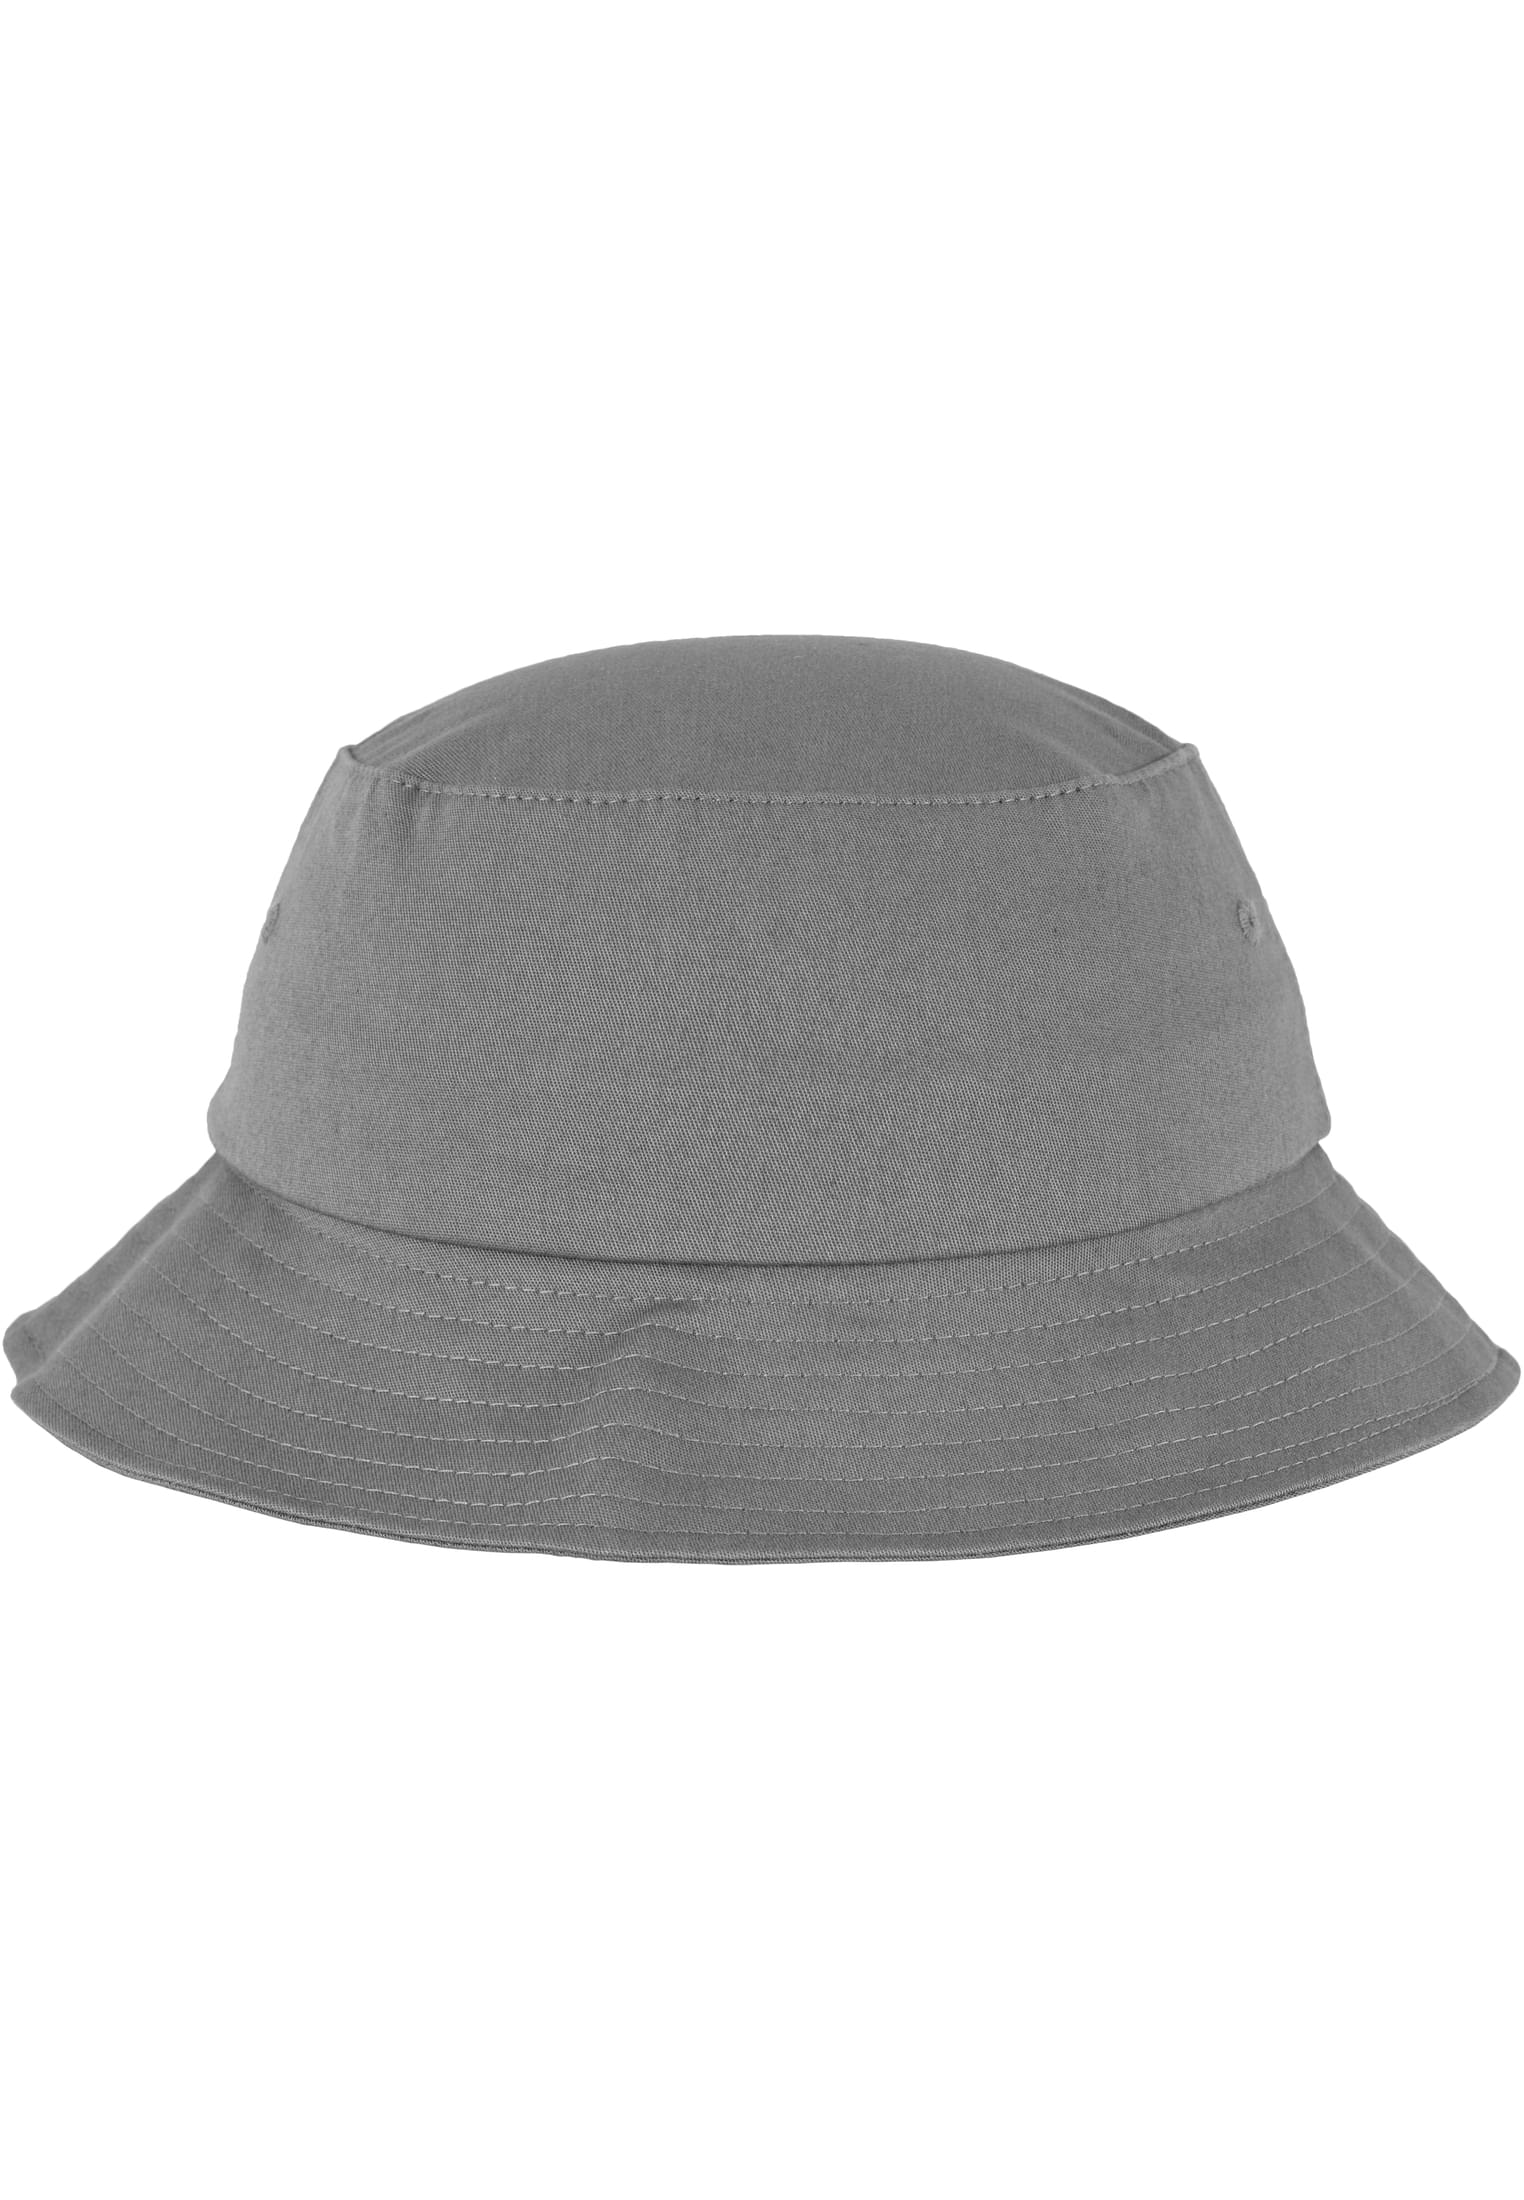 Flexfit Cotton Twill Hat-5003 Bucket